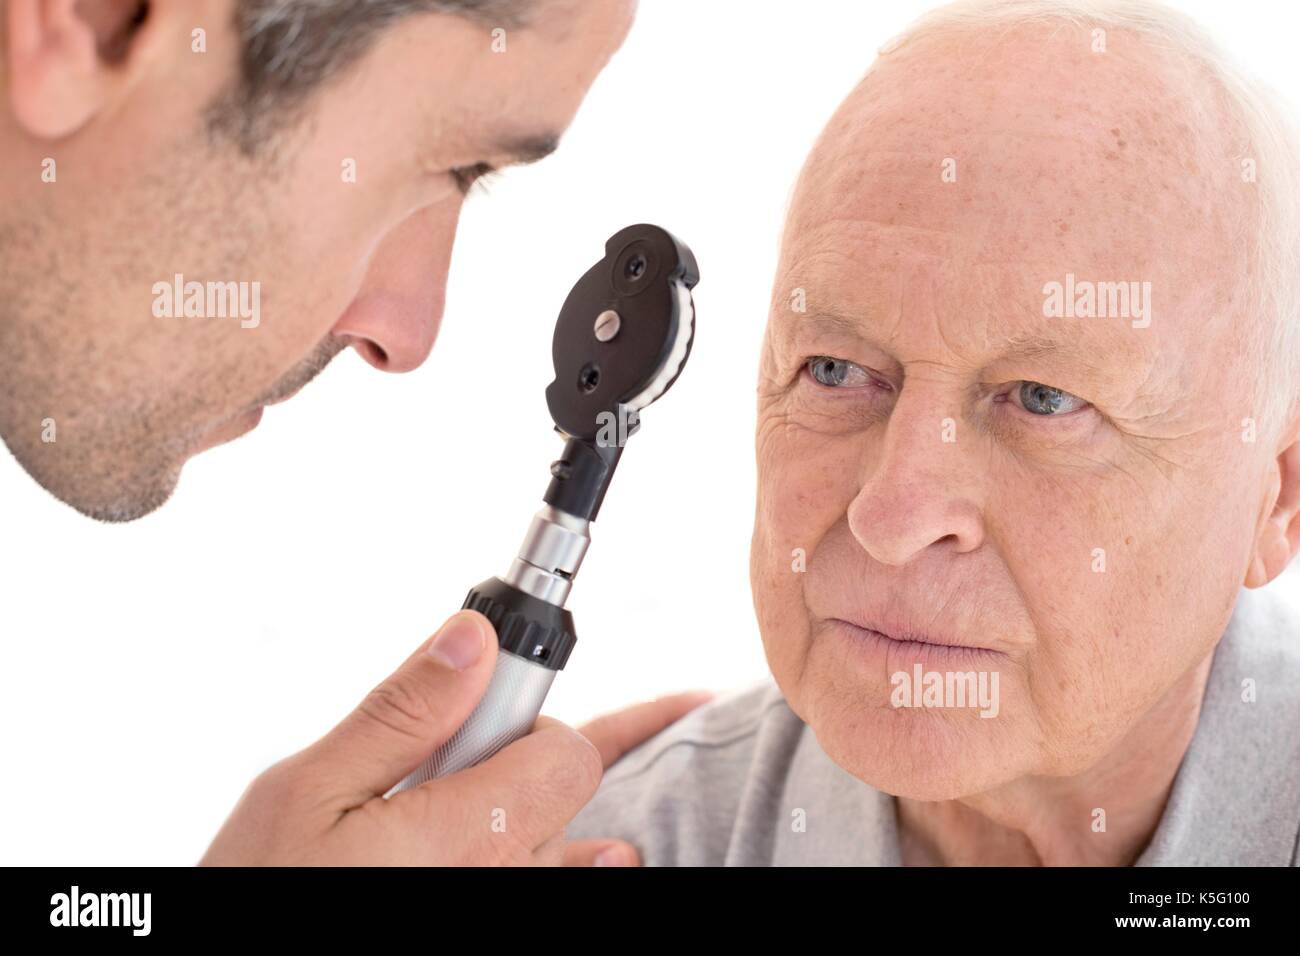 Médecin homme examiner les yeux du patient, portrait. Banque D'Images